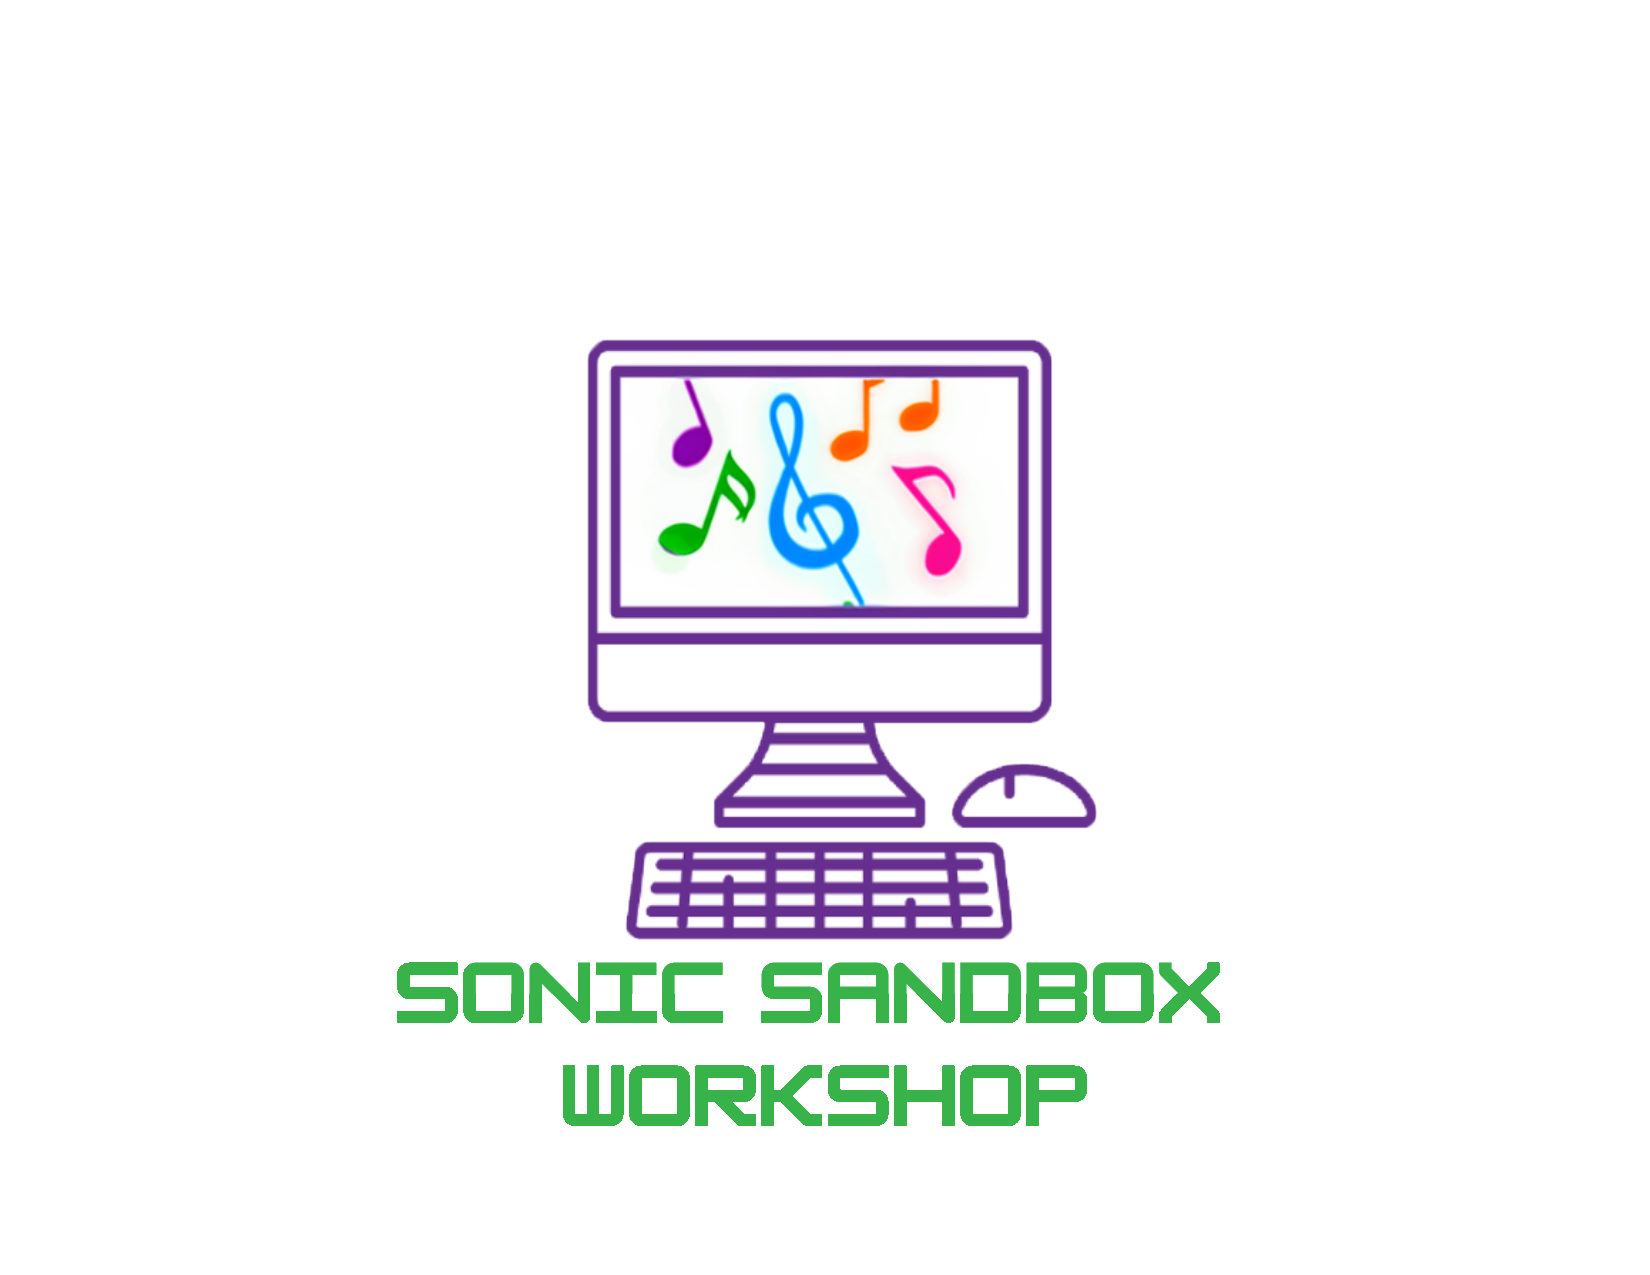 Sonic Sandbox